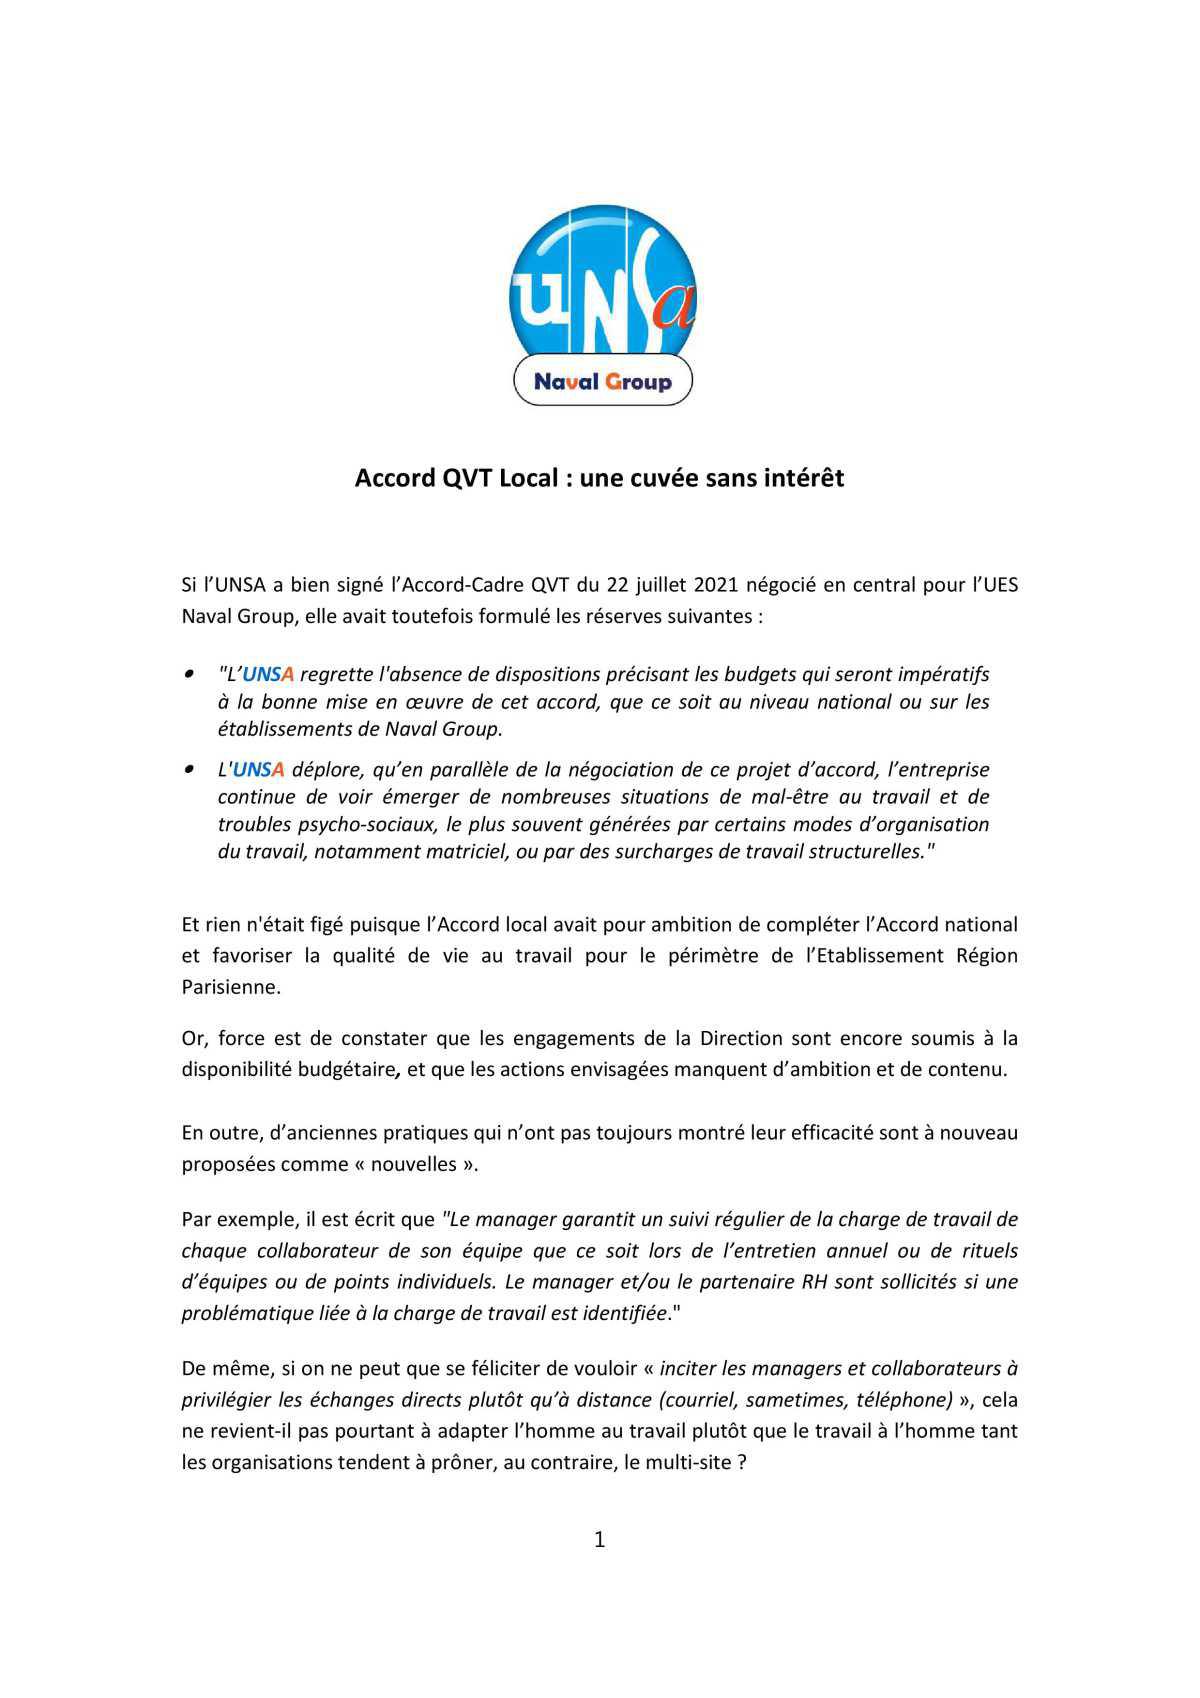 L'UNSA Région Parisienne ne signe pas l'accord QVT local !